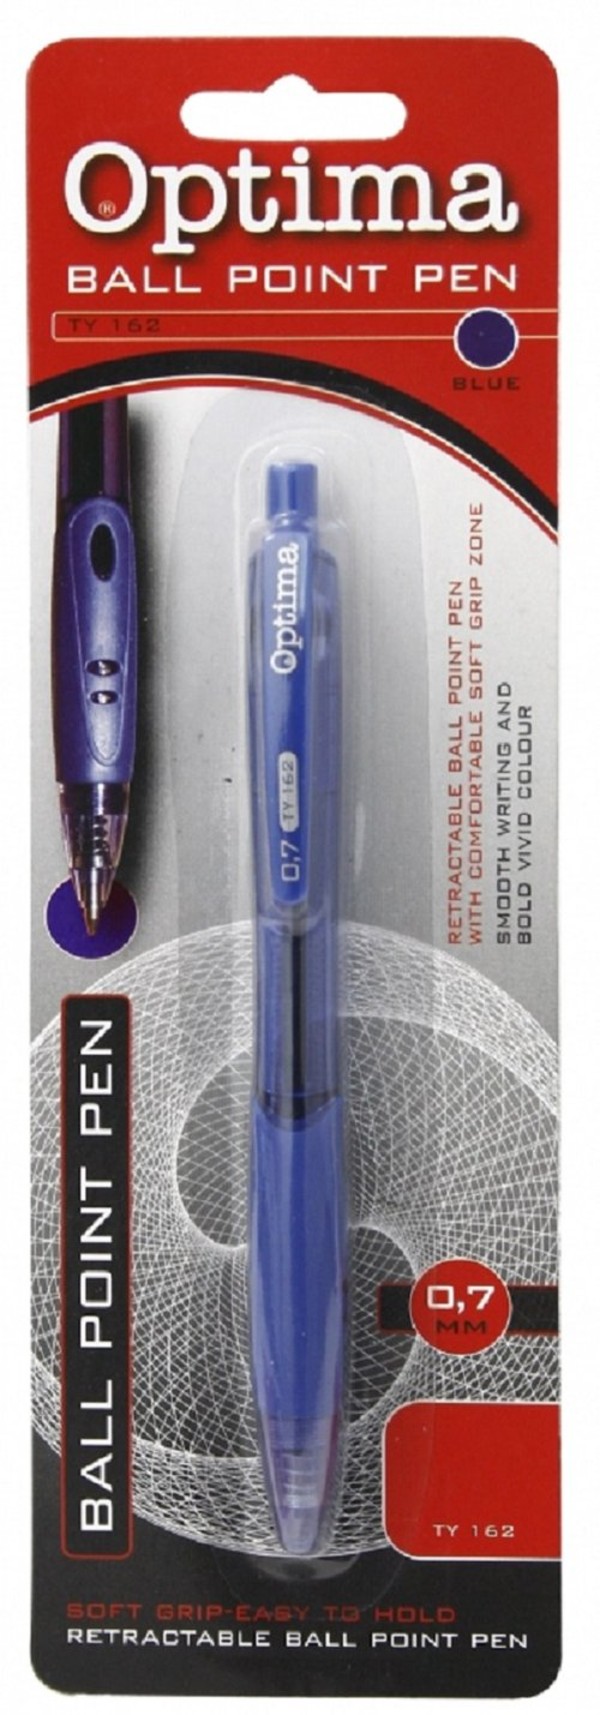 Długopis kulkowy TY 163 0.7 mm Optima